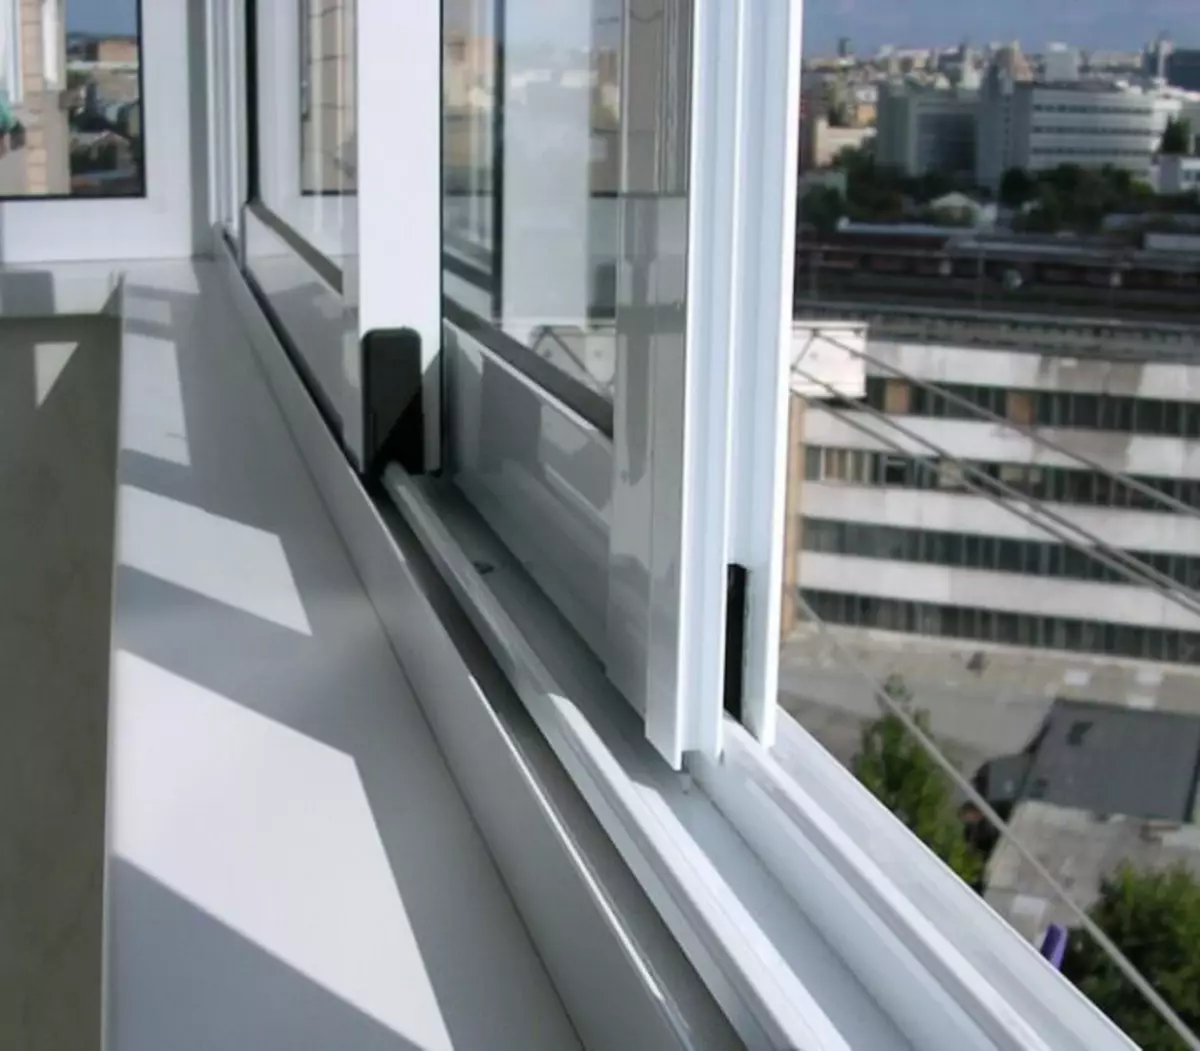 Kumaha carana miceun windows dina balkon: tip sareng rekomendasi